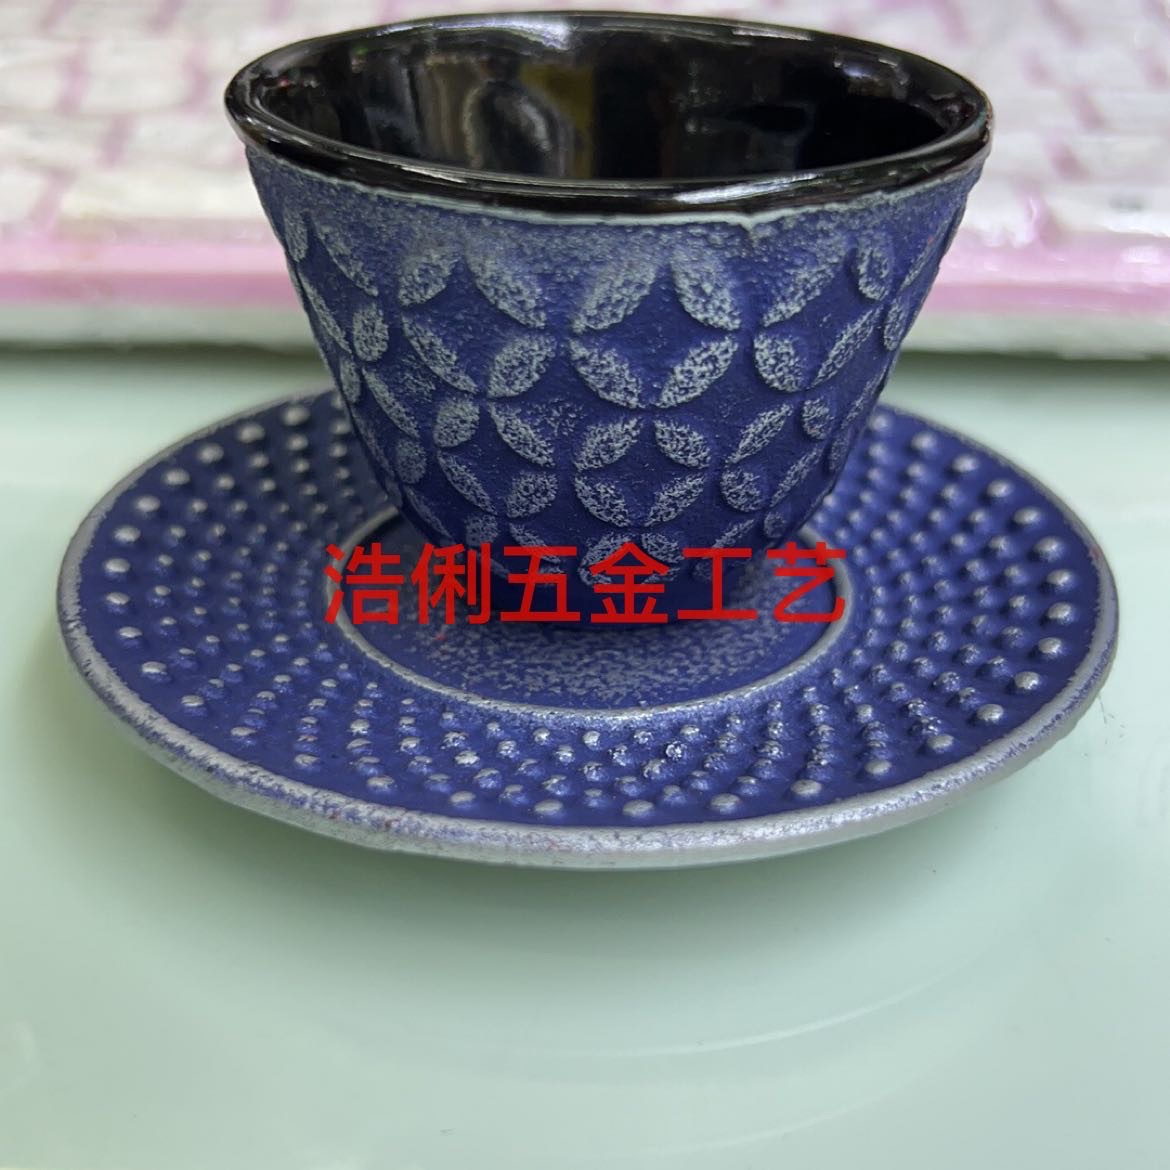 铸铁茶壶/生铁杯/生铁壶套装产品图